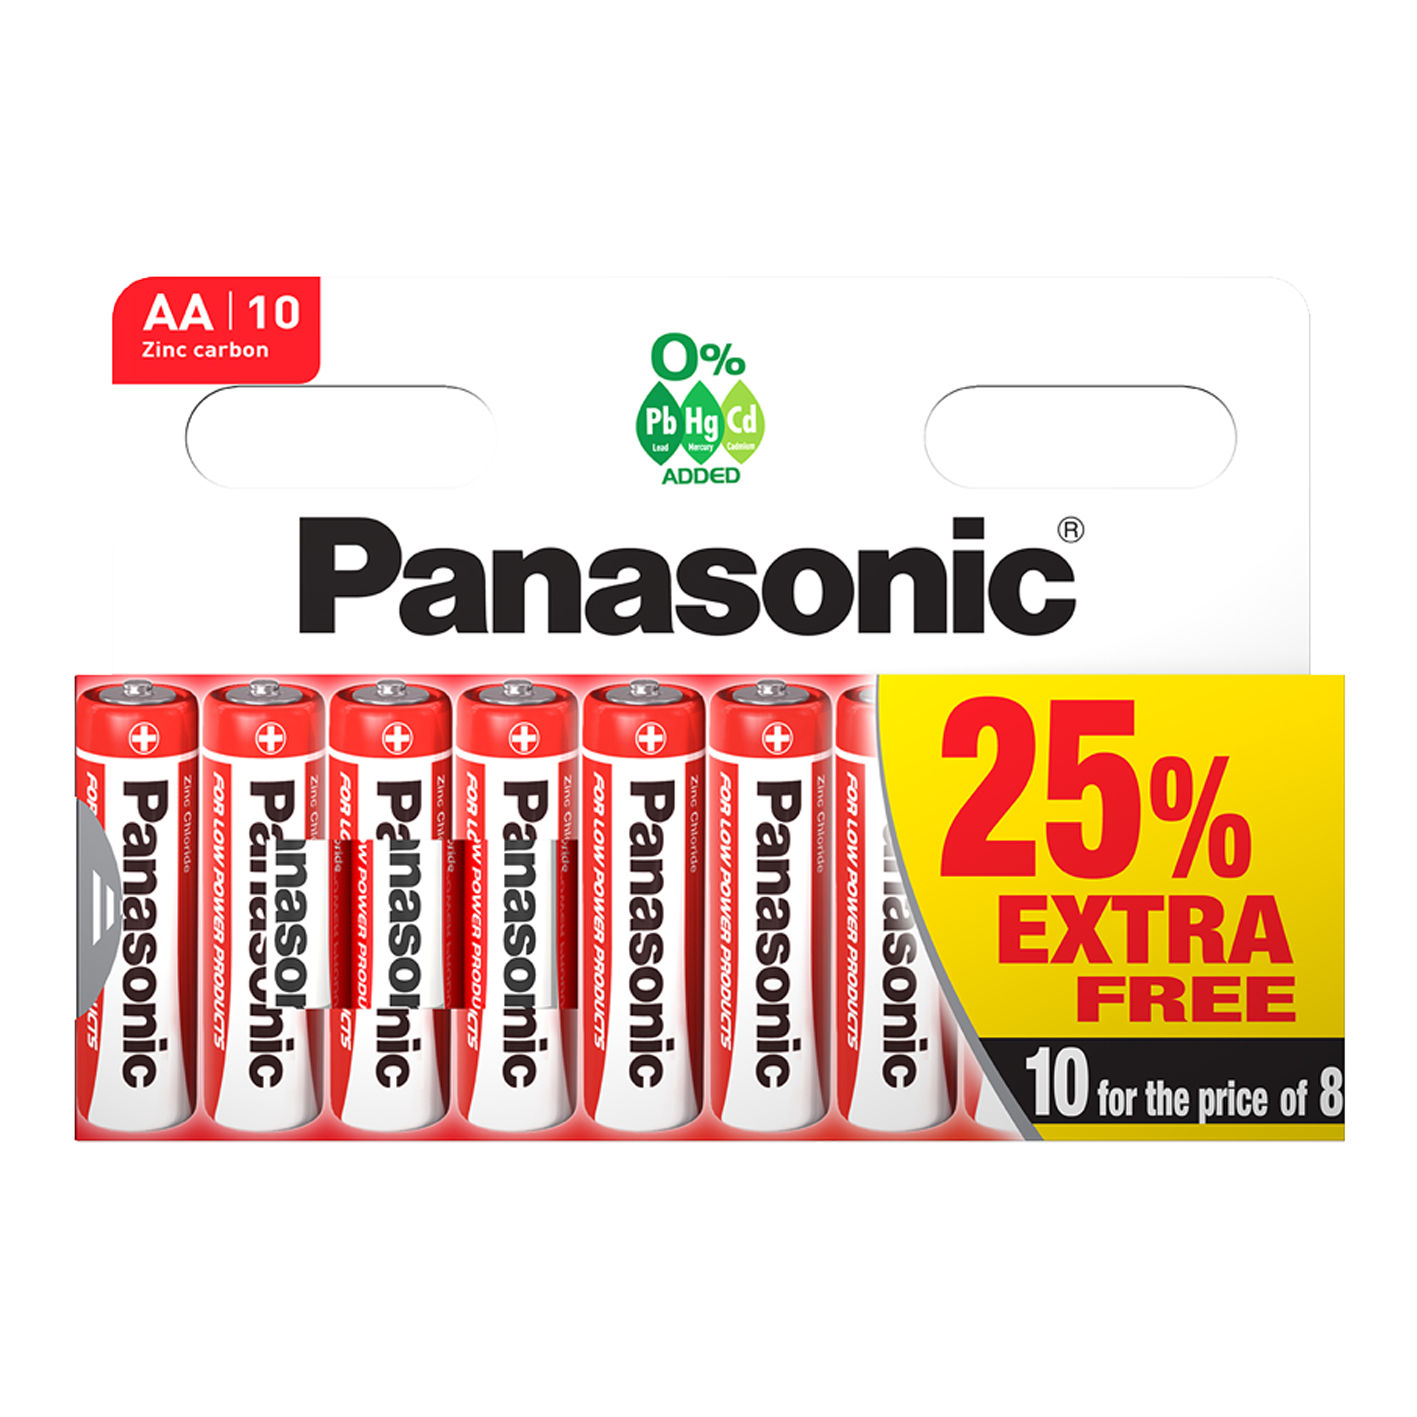 Panasonic AA Zinc Single Use batteries 10 Pack